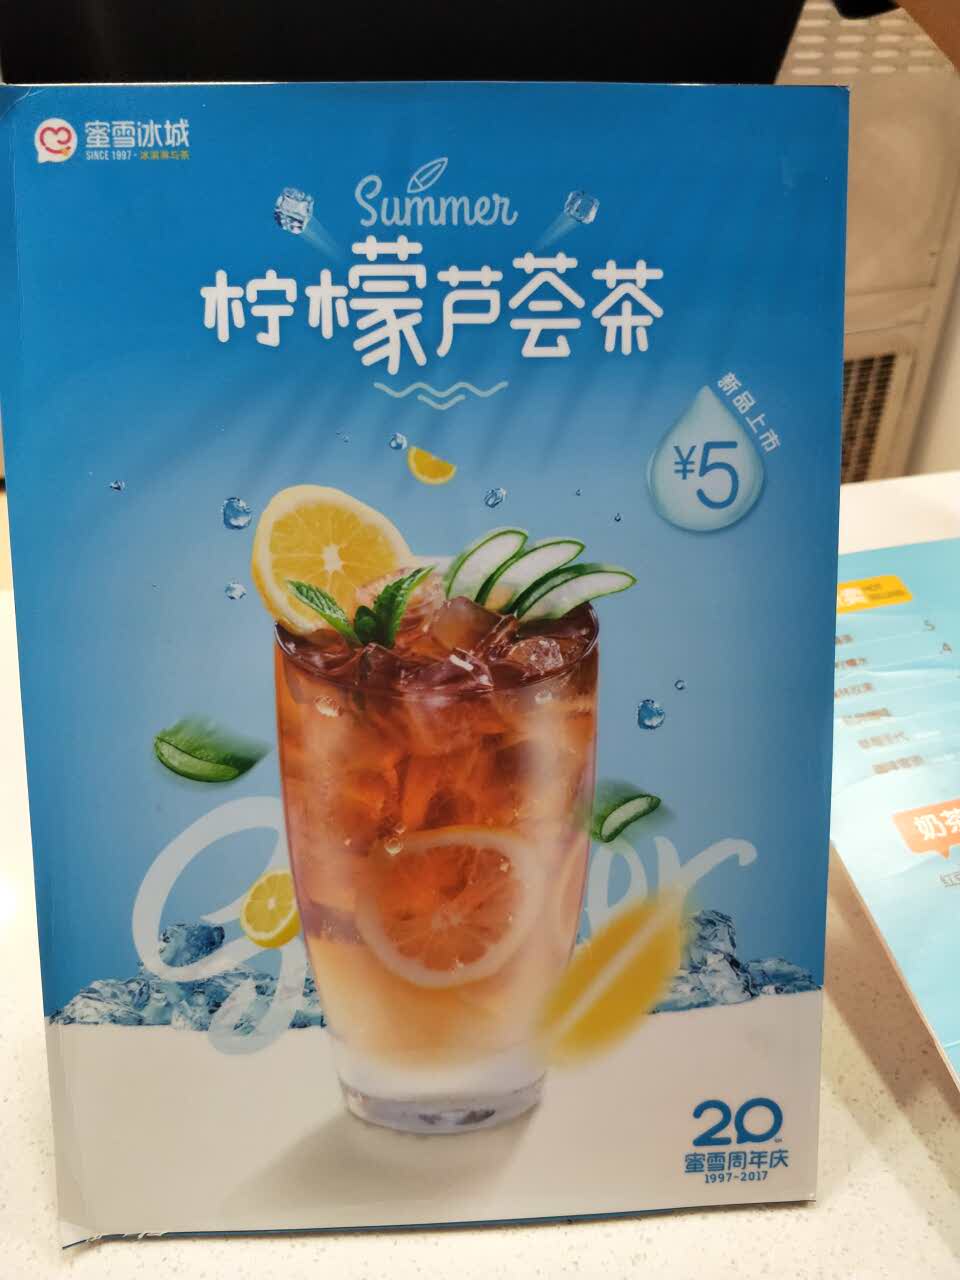 柠檬芦荟茶蜜雪冰城图片